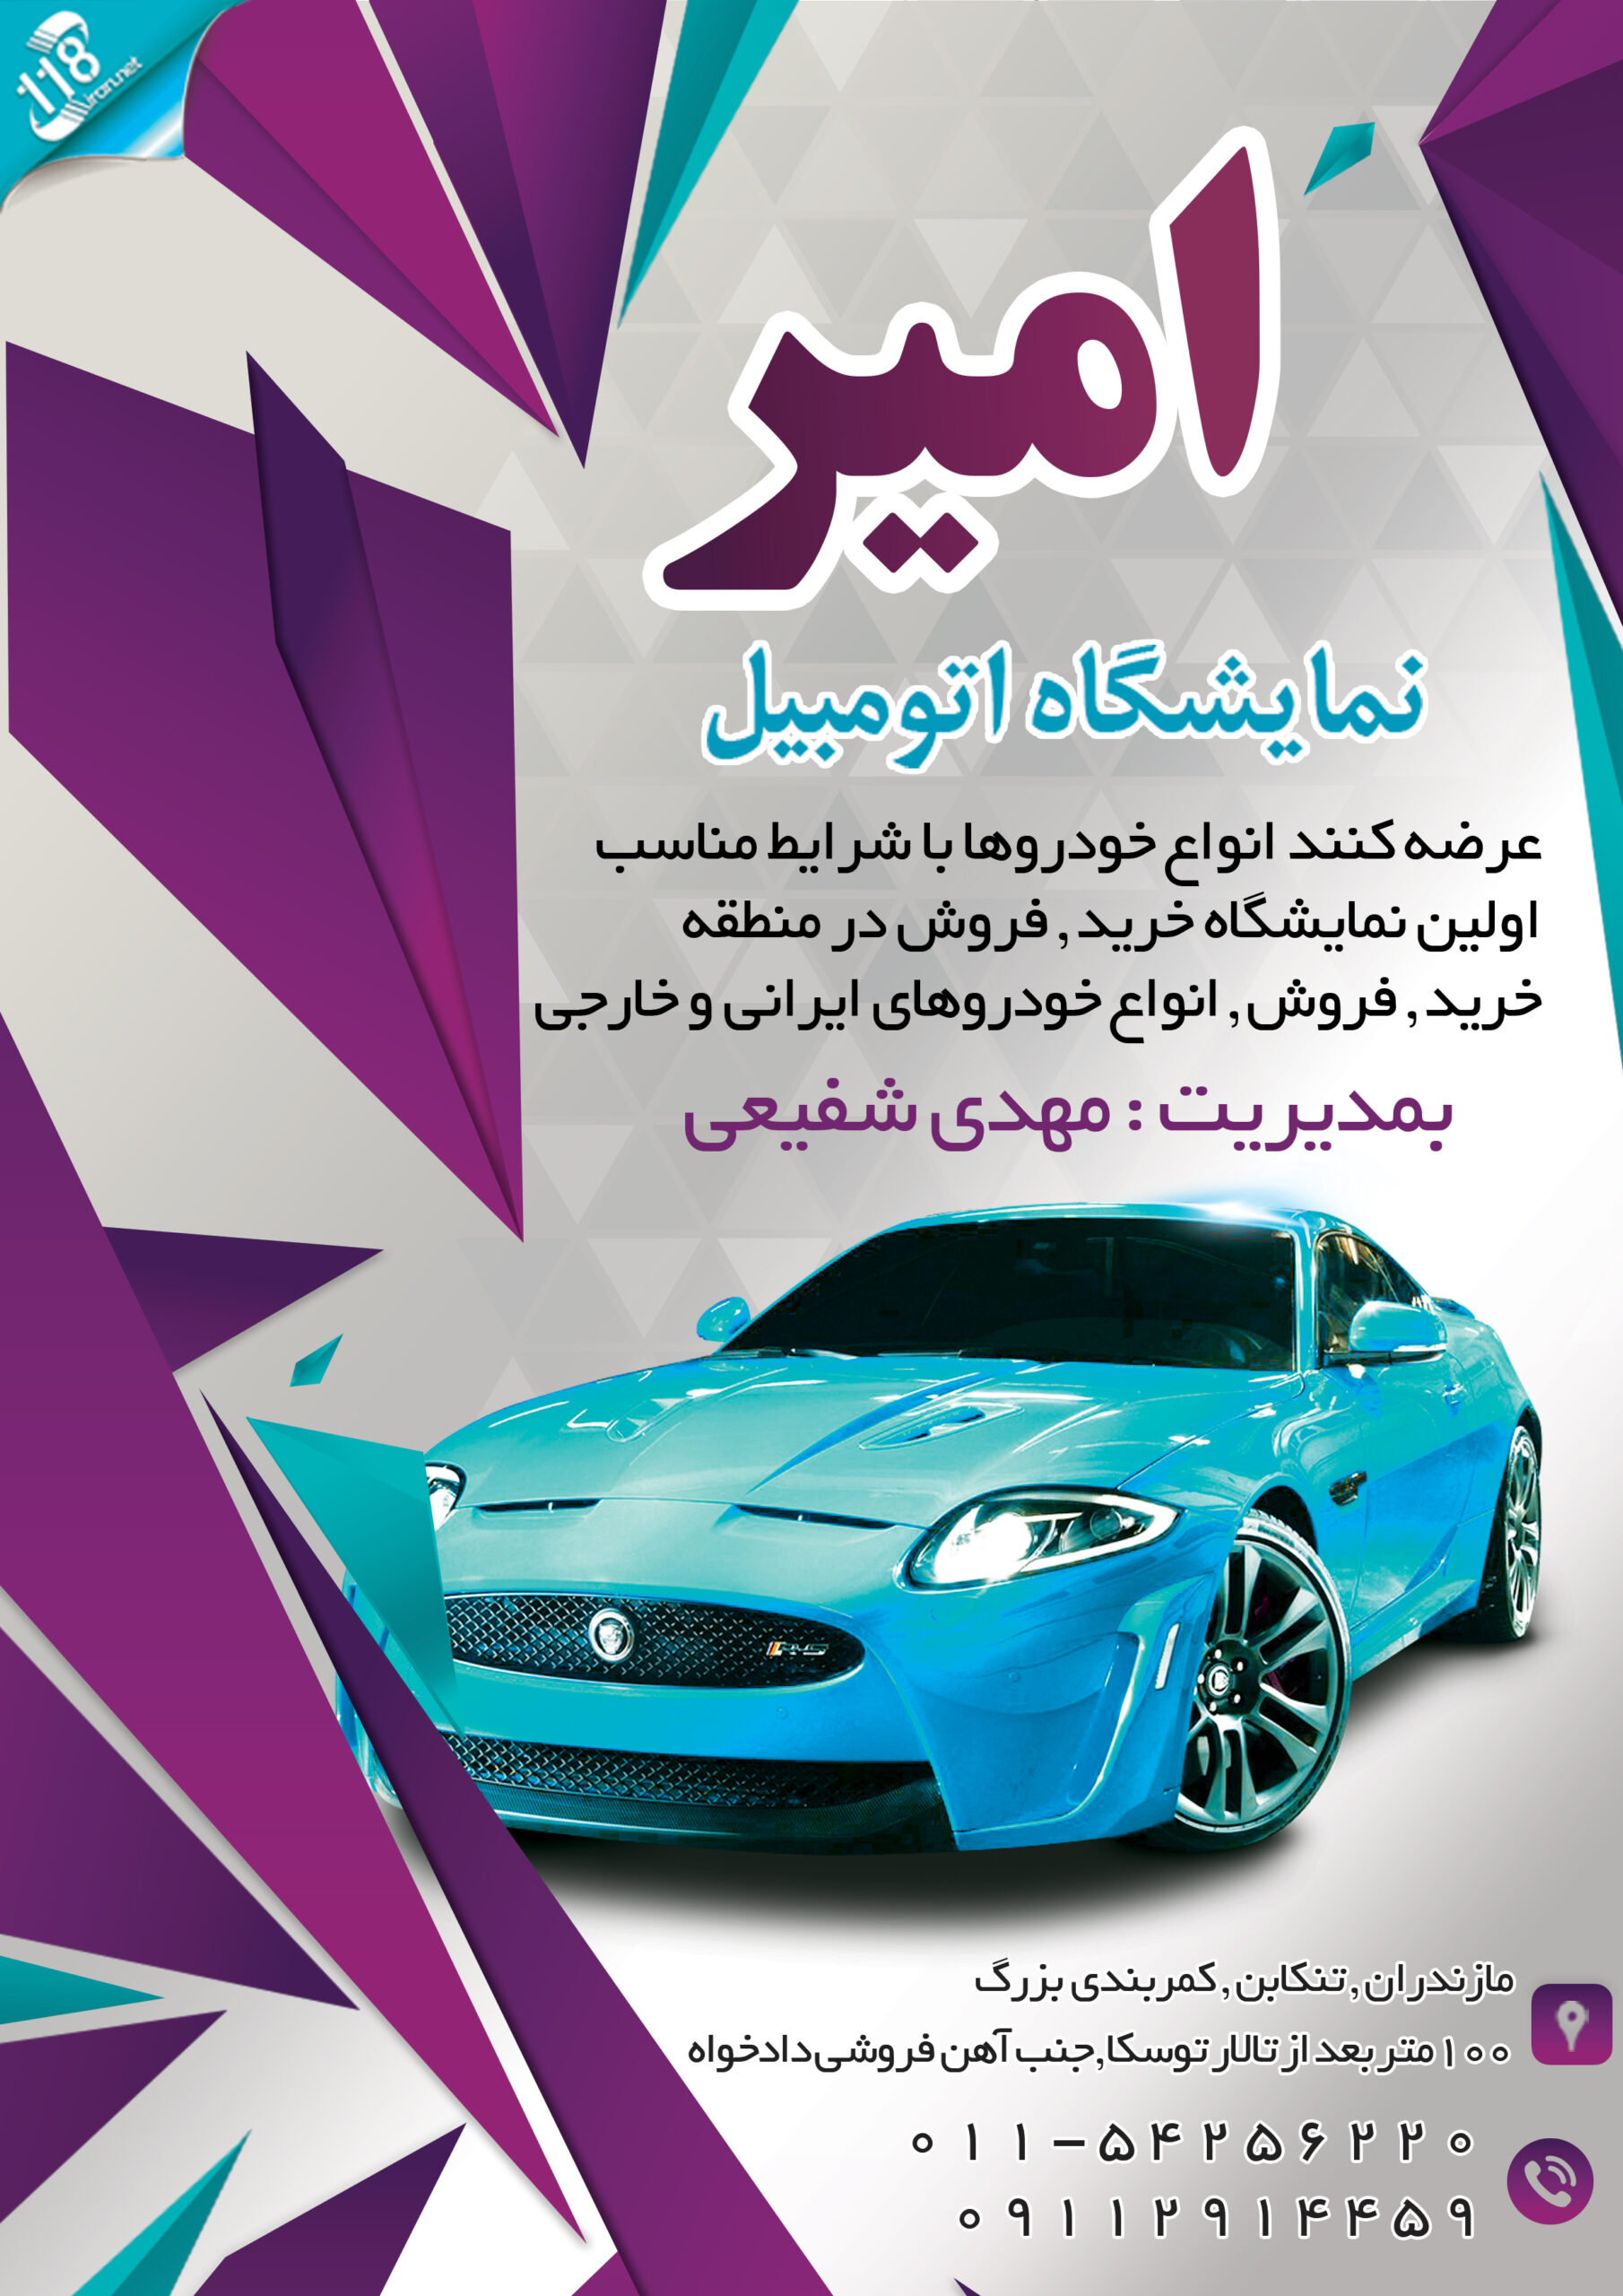  نمایشگاه اتومبیل امیر مازندران 